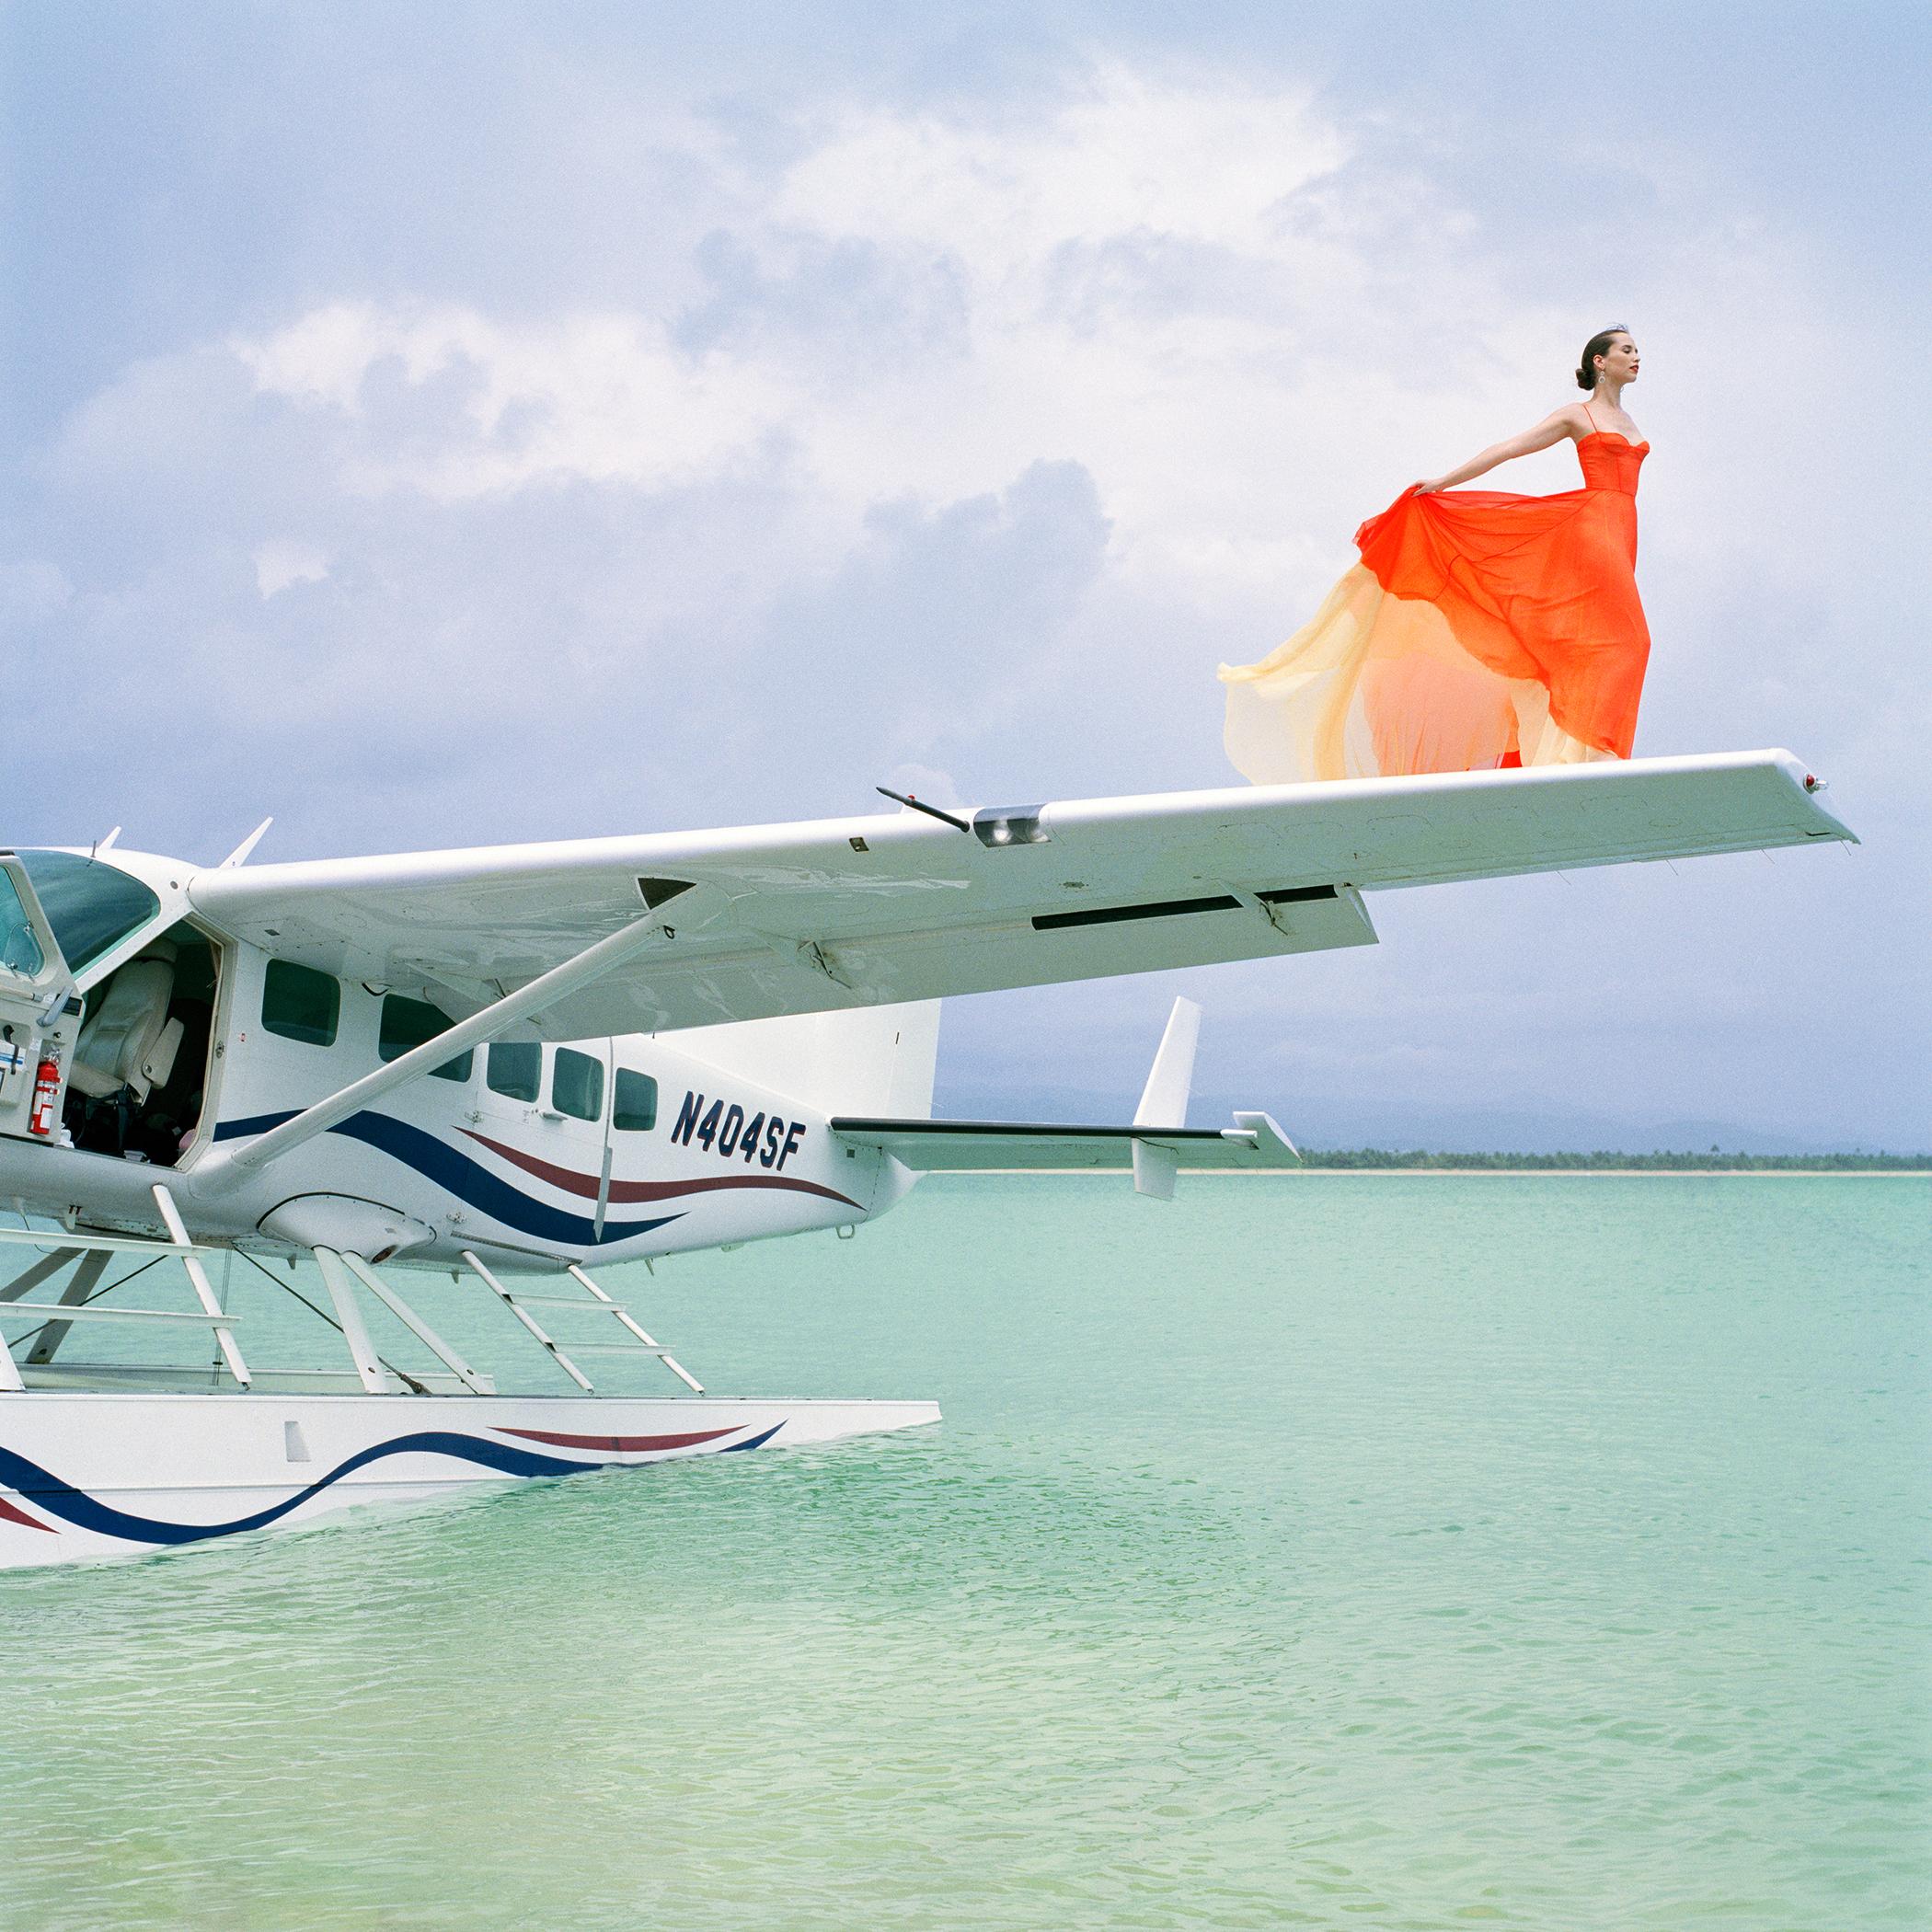 Rodney Smith Color Photograph - Saori on Sea Plane Wing No. 2, Dominican Republic